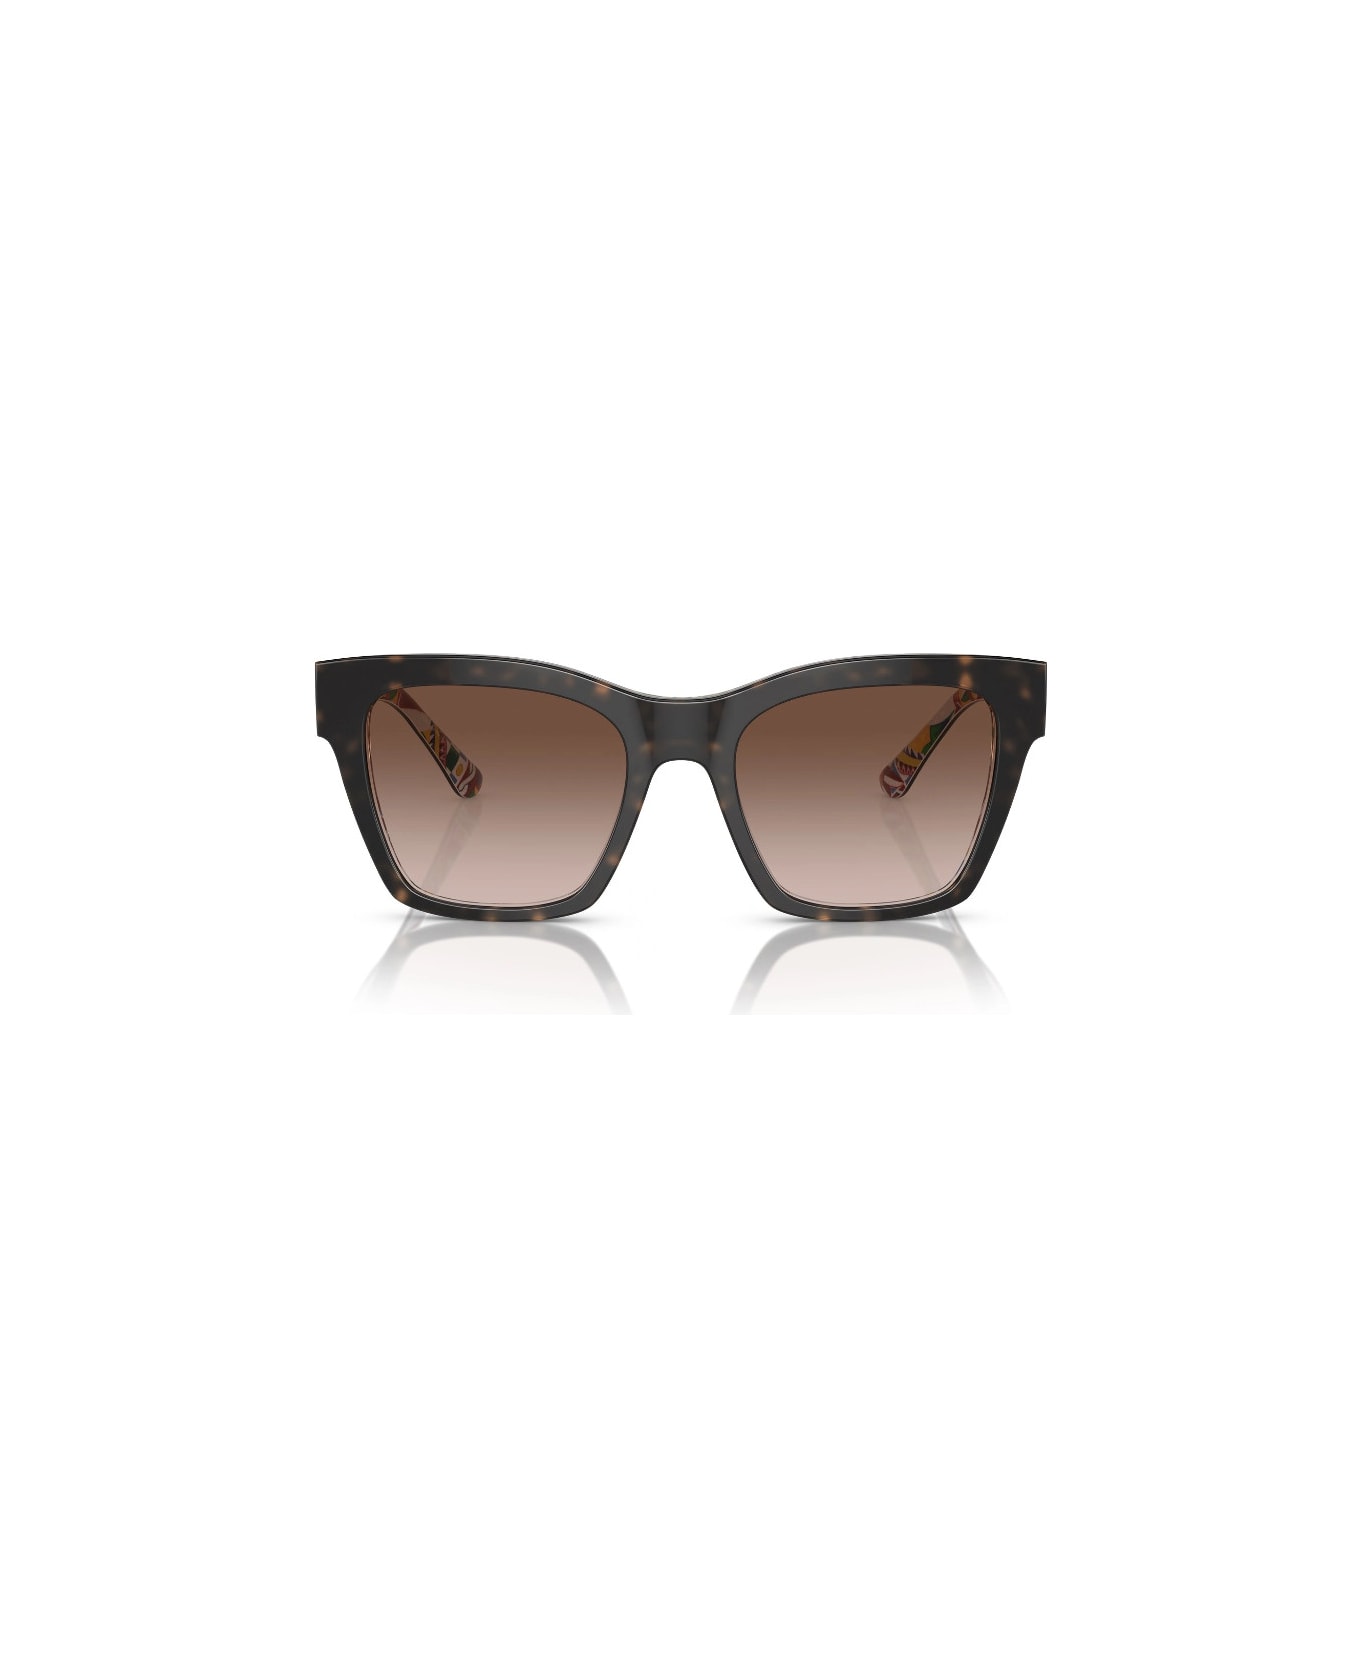 Dolce & Gabbana Eyewear DG4384 3217/73 Sunglasses - Tartarugato サングラス